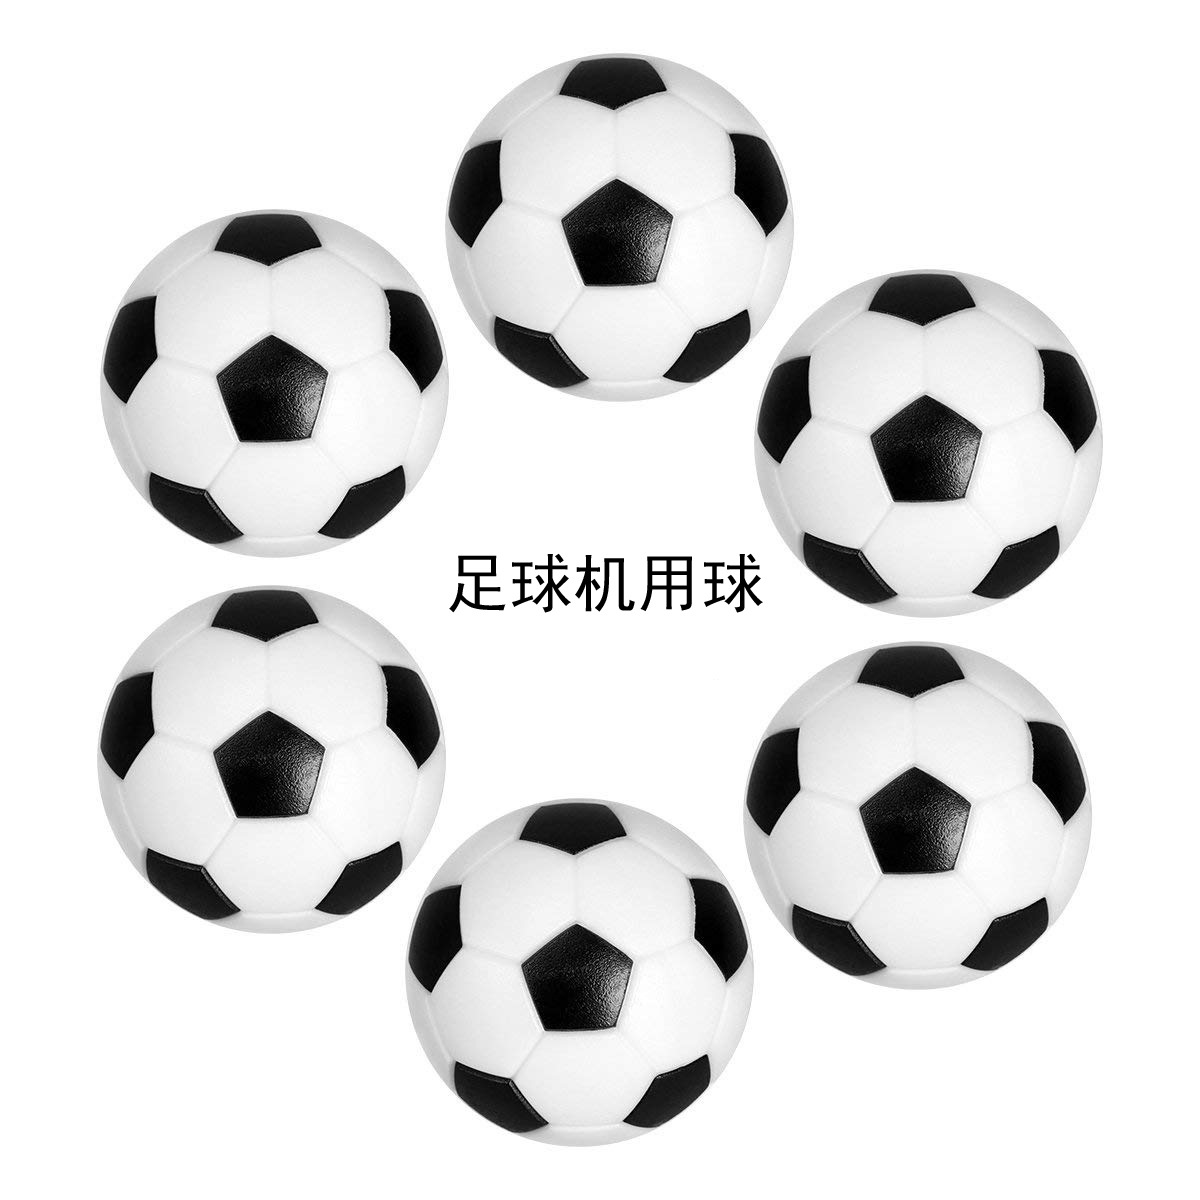 桌上足球 环保塑胶黑白小足球 直径29 31 32 36mm足球机配件图